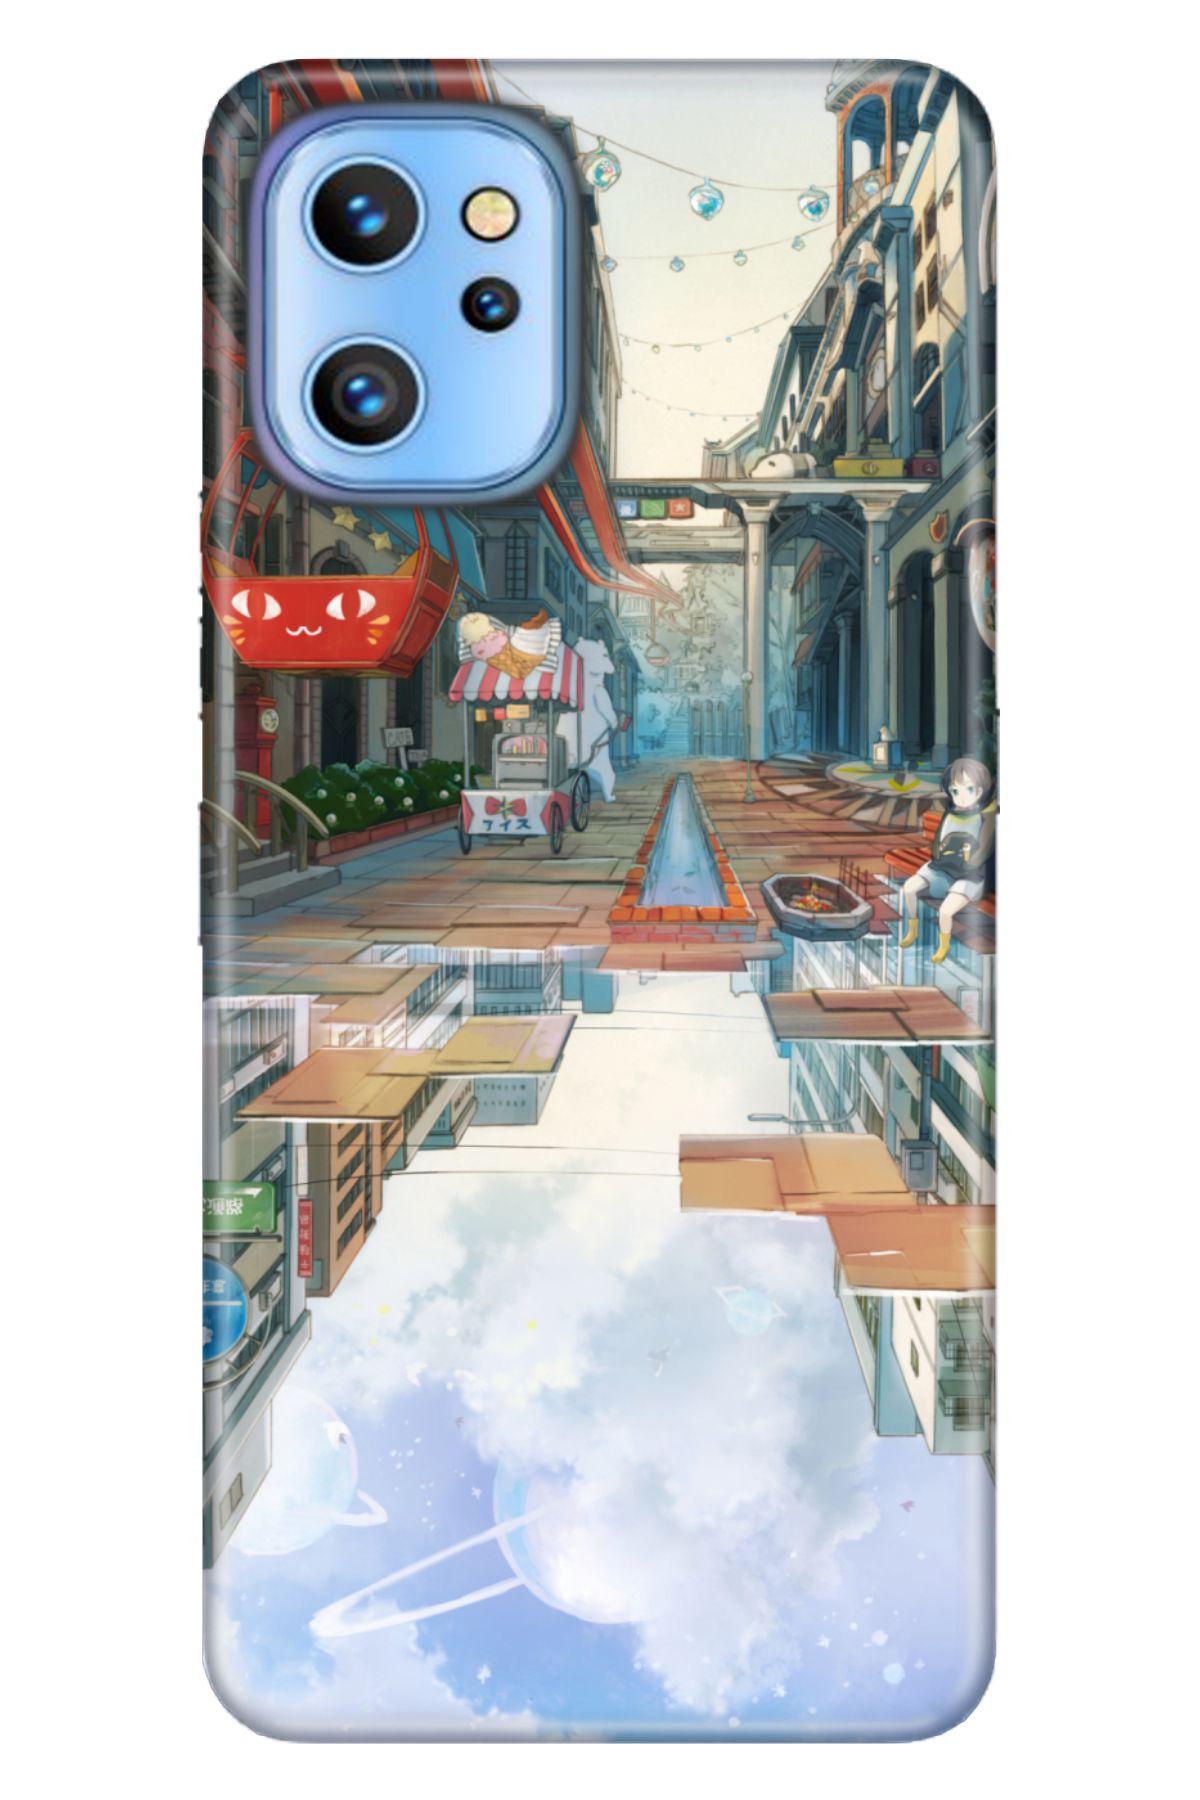 Reeder S19 Max Pro Uyumlu Kılıf Silikon Desenli Resimli Kapak 3D Anime